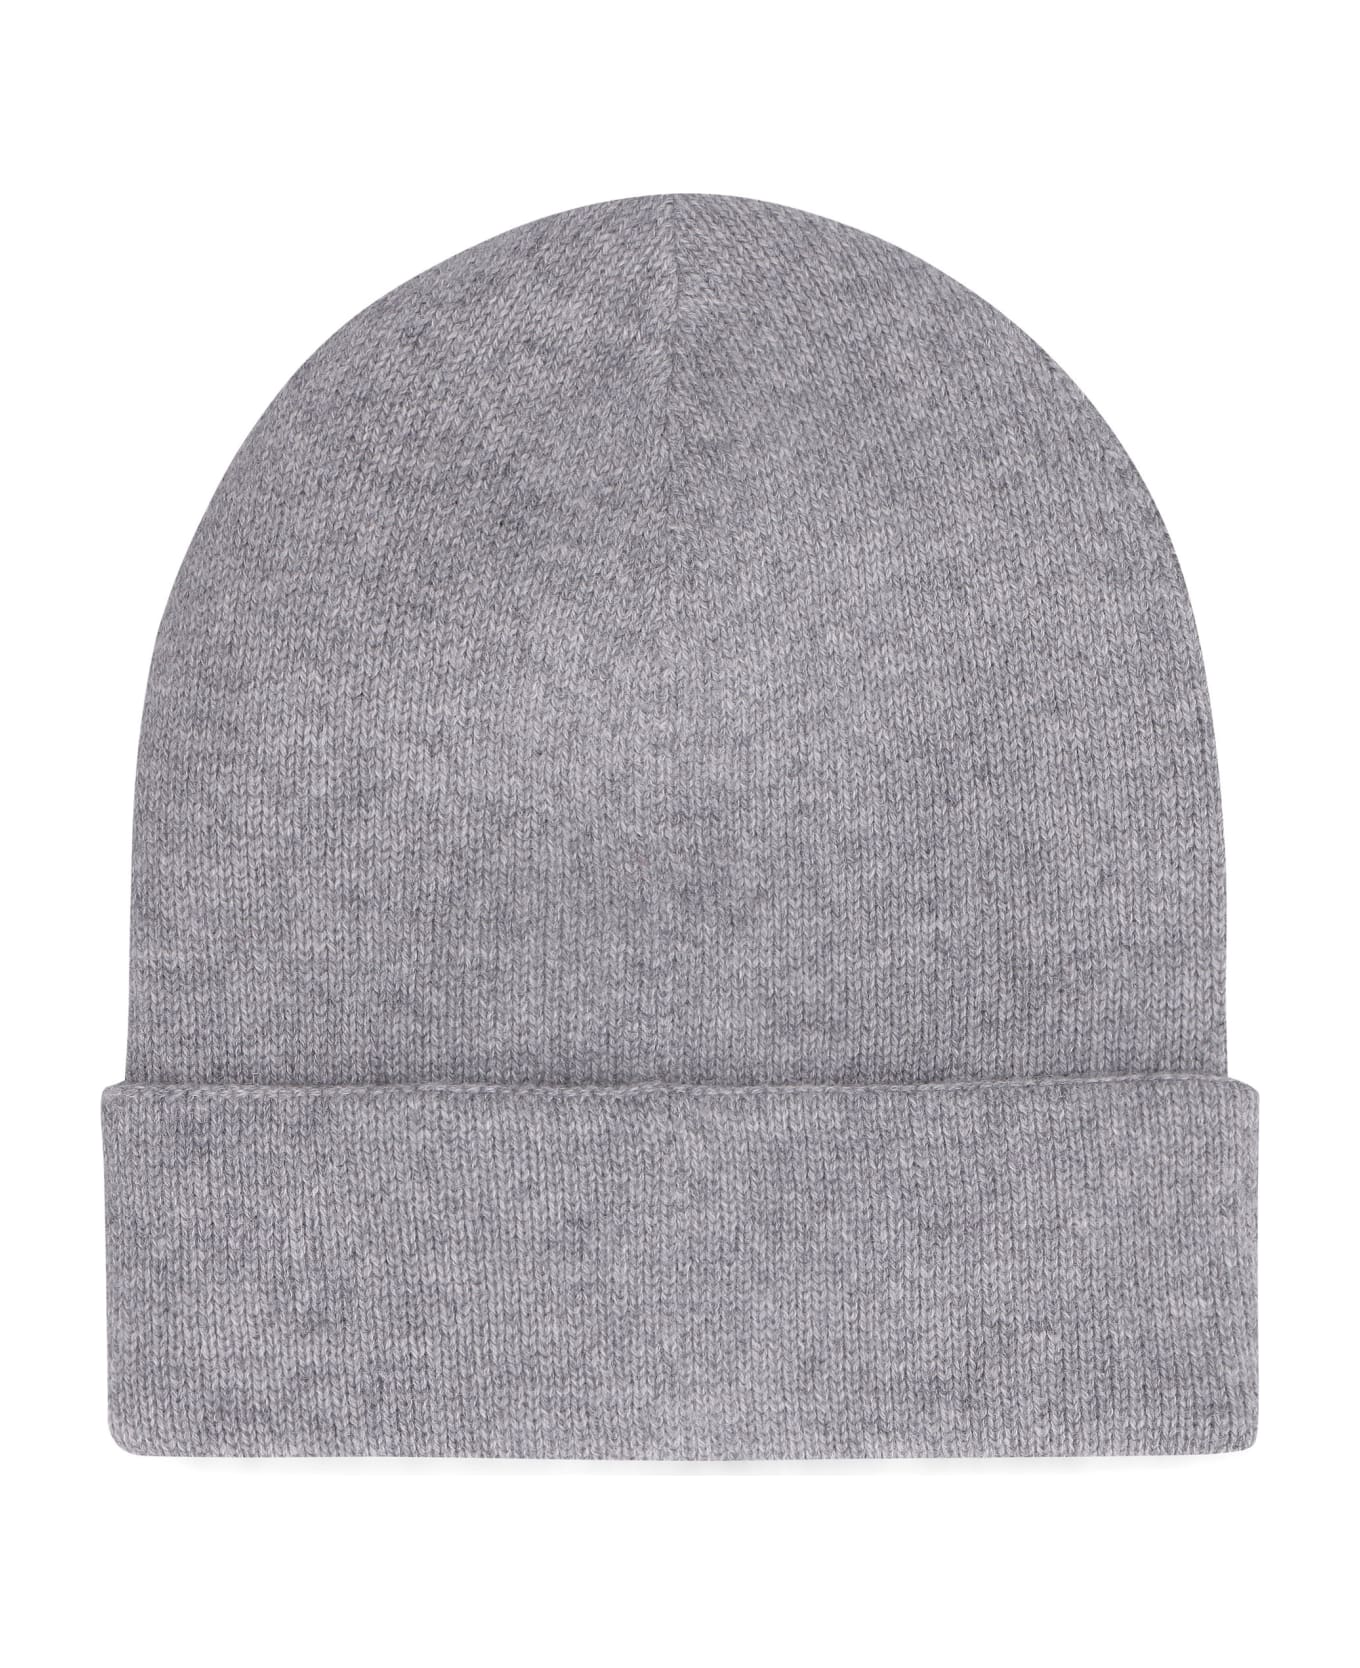 Alexander McQueen Knitted Beanie Hat - grey